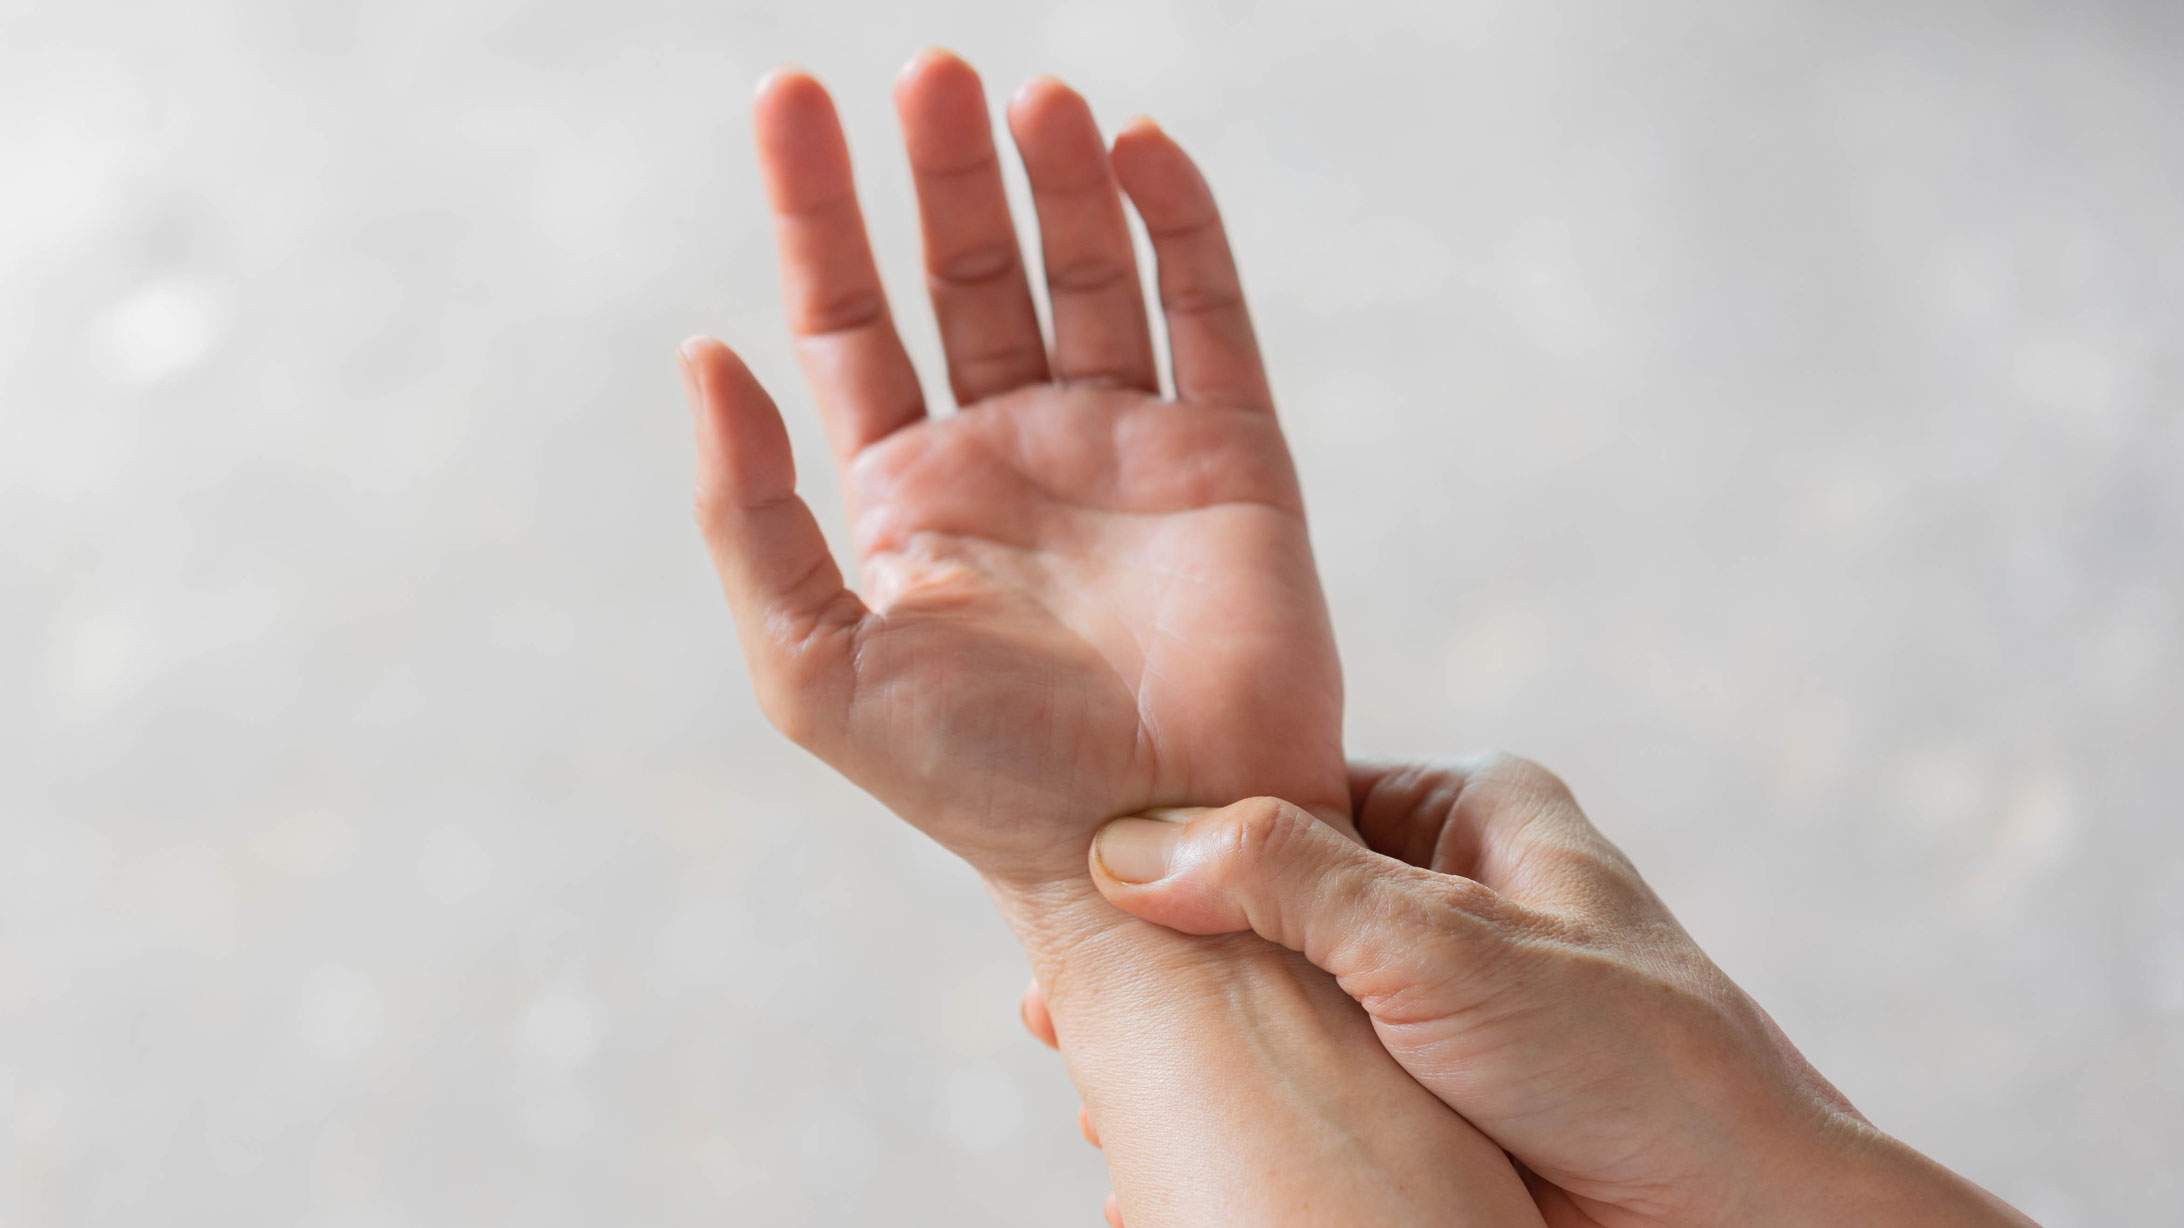 Das Bild zeigt zwei Hände, eine zeigt mit der Handfläche nach oben, die andere fühlt mit dem Daumen das Handgelenk.